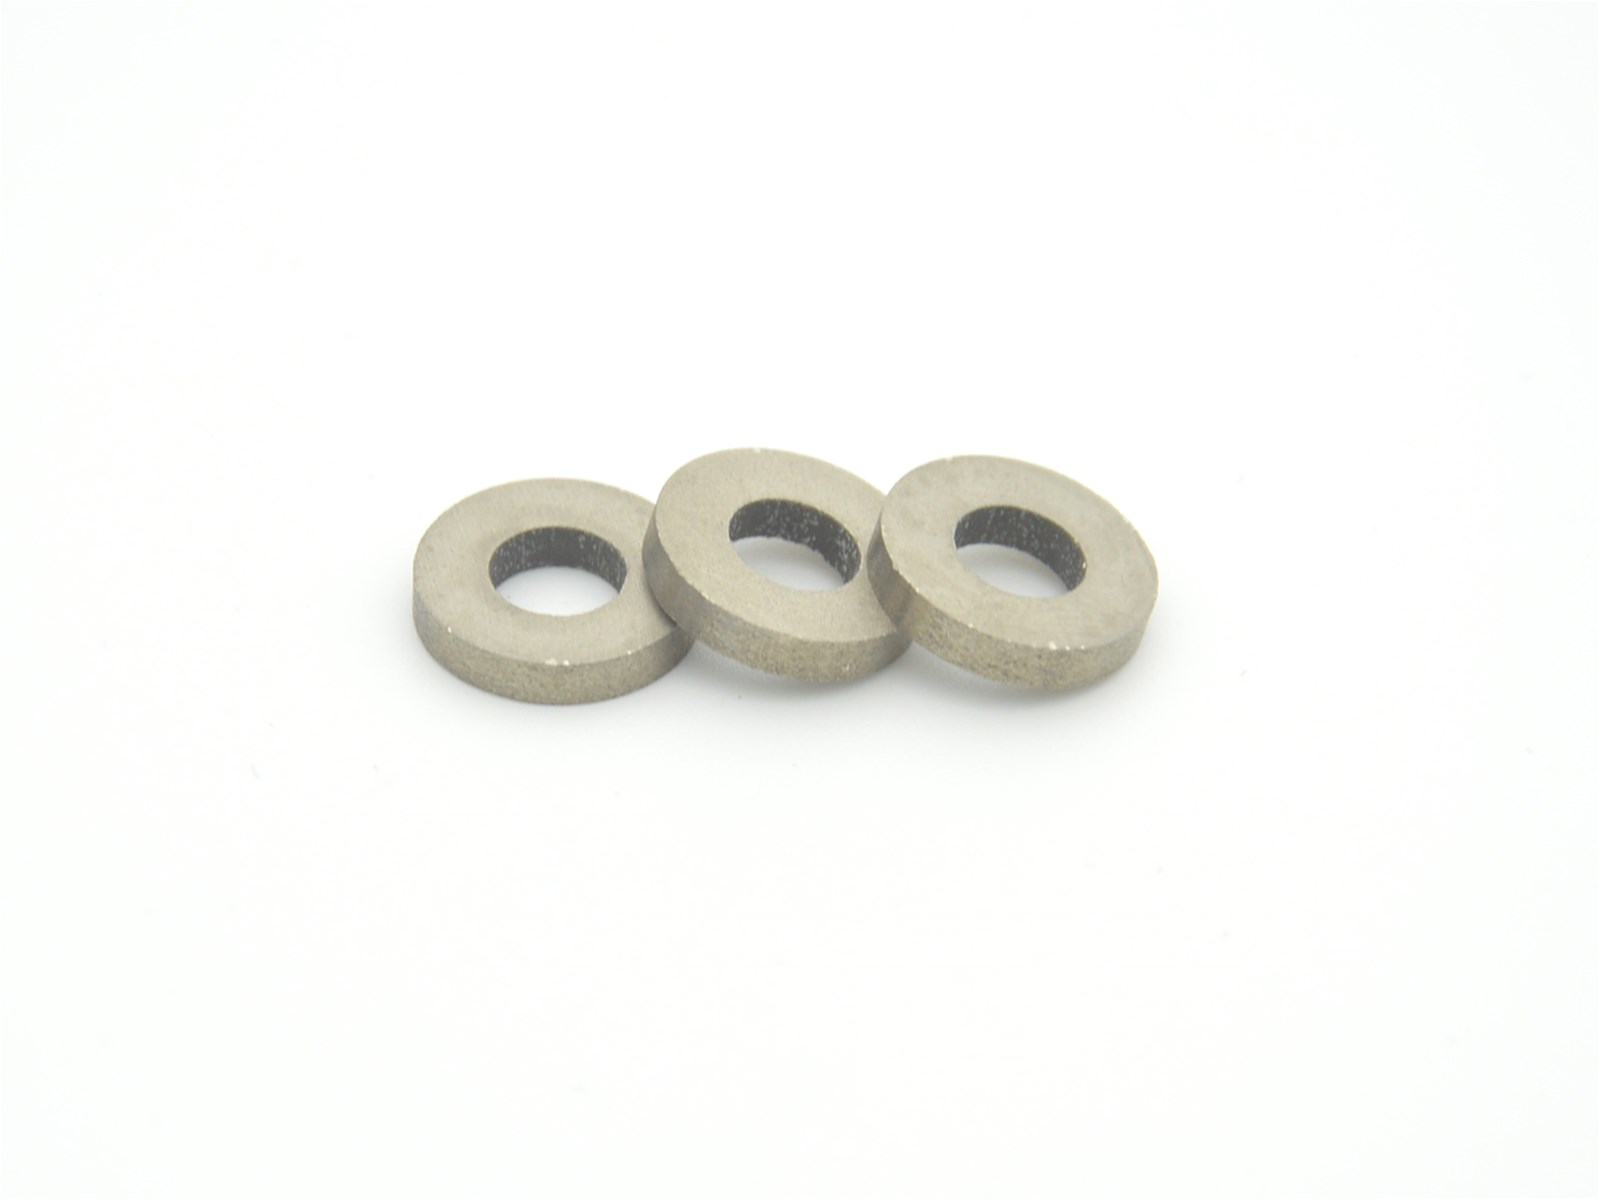 Customized Ring samarium cobalt SmCo Magnets